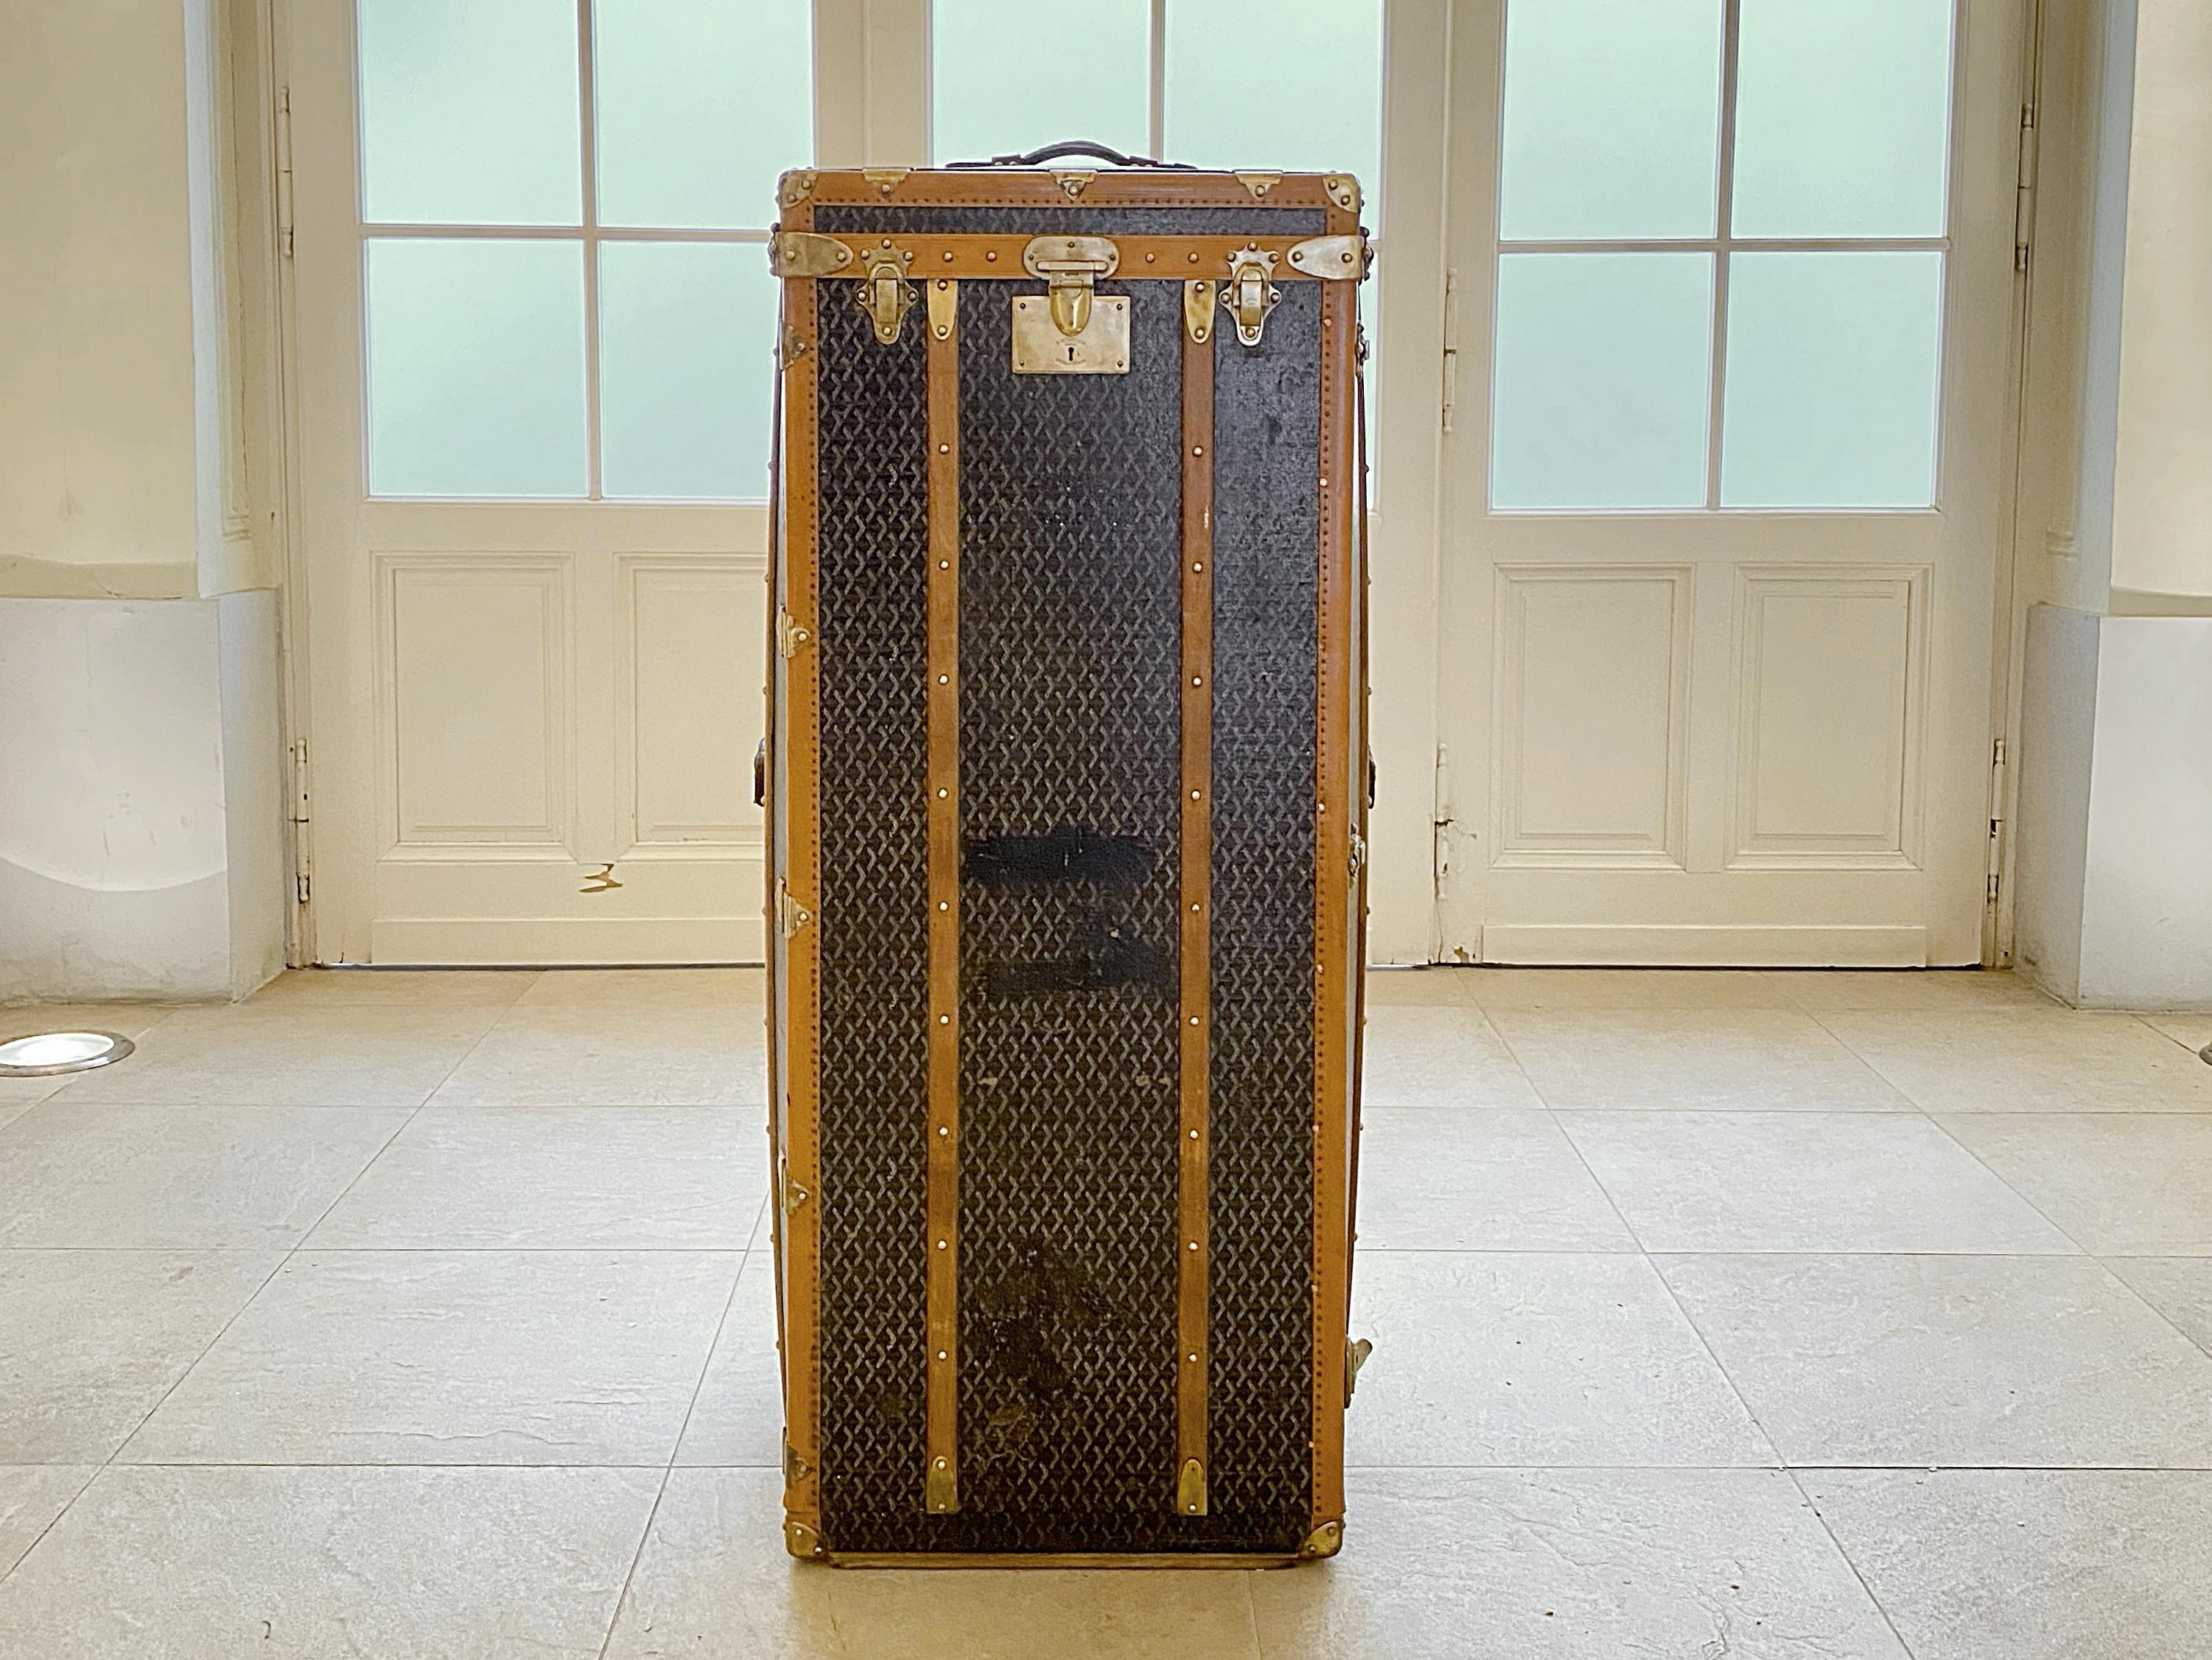 Frühe 1910er sehr seltene Goyard Garderobe Koffer handgefertigt in Frankreich. Dies war der größte Koffer, der je von Goyard hergestellt wurde. Die Truhe ist in sehr gutem Zustand mit schöner Patina. Perfekt geeignet als Truhe, Konsole, Deckenbox